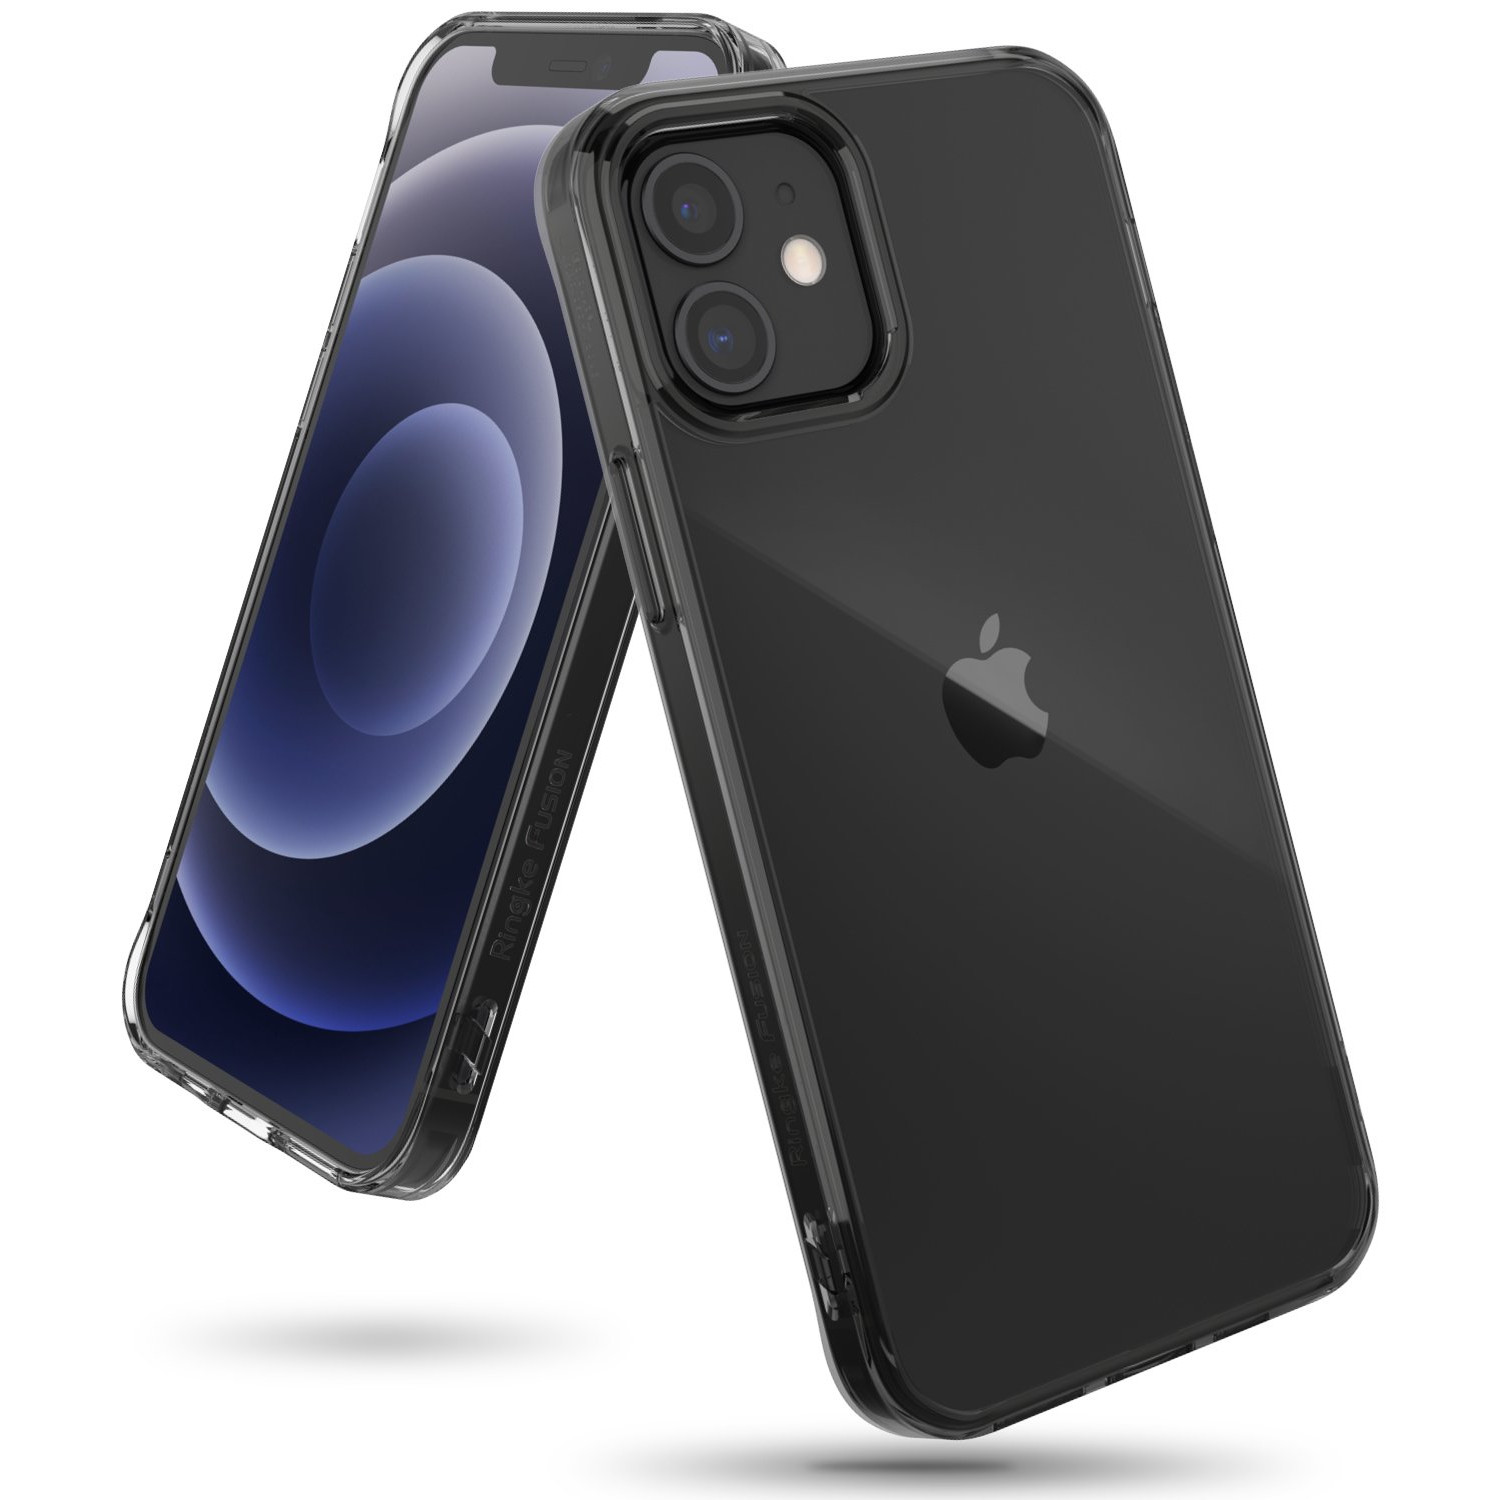 Ốp lưng chống sốc hàng hiệu Ringke Fusion cho iPhone 12 series - Hàng nhập khẩu